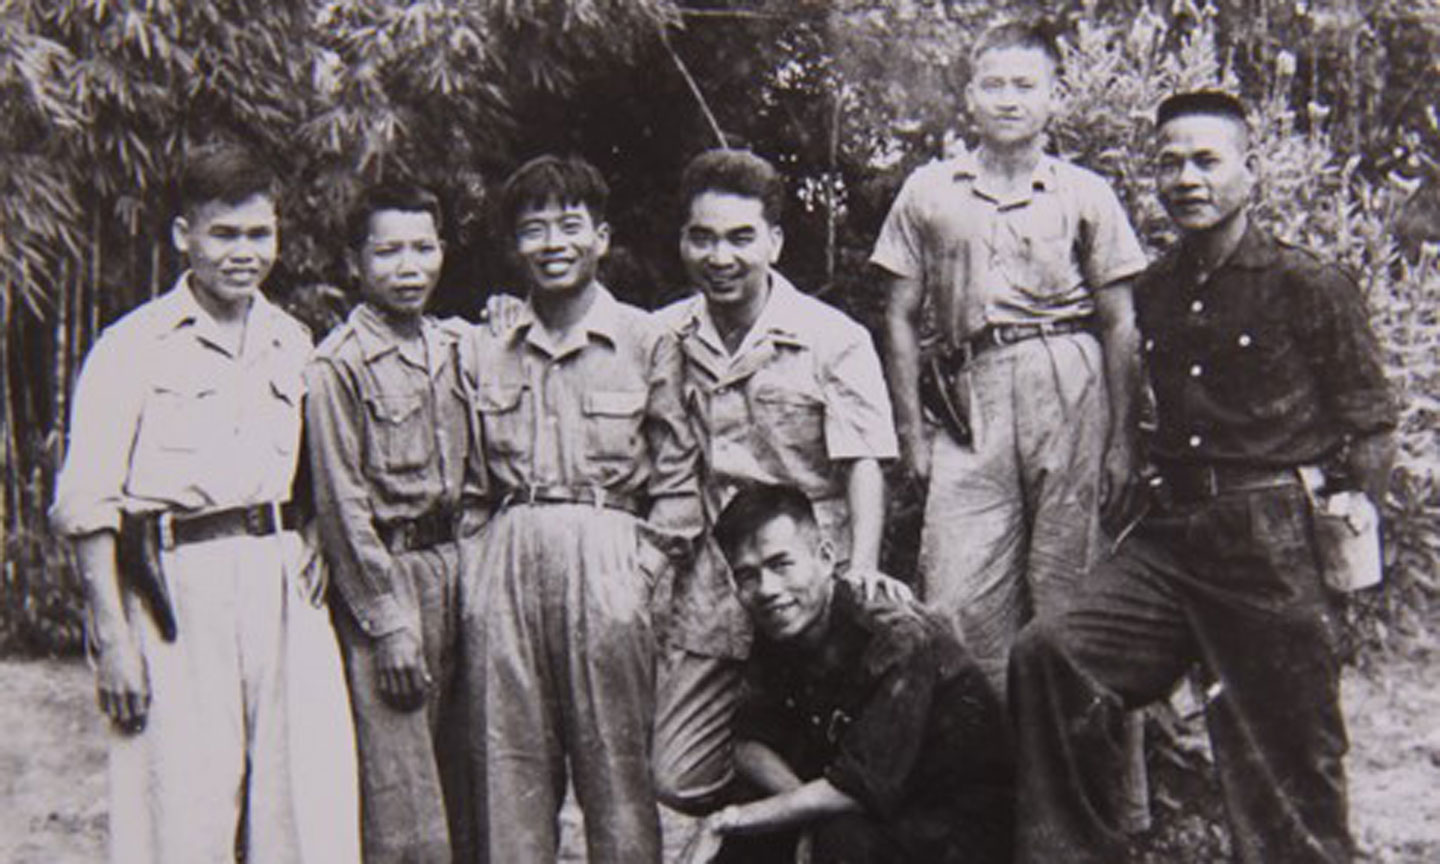 Đồng chí Phạm Hùng (thứ ba từ trái sang), Phó giám đốc Sở Công an Nam bộ chụp ảnh lưu niệm với các đại biểu Hội nghị Công an toàn quốc lần thứ 5 (tháng 1-1950)